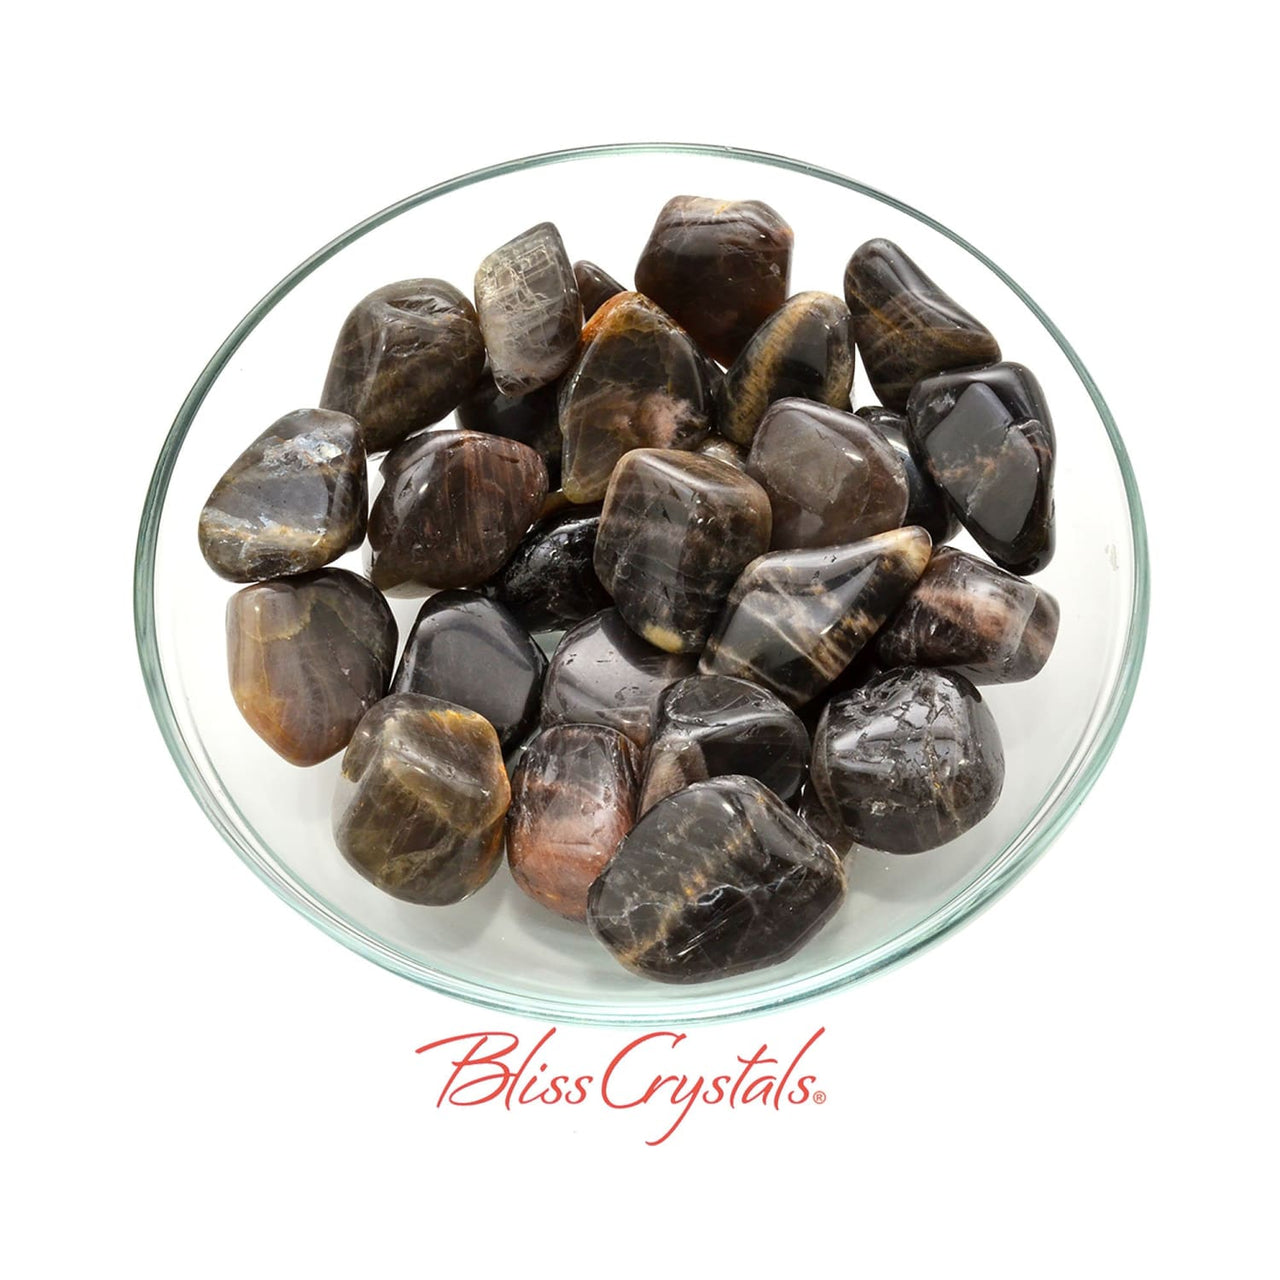 1 BLACK MOONSTONE Tumbled Stone aka Northosite you pick size